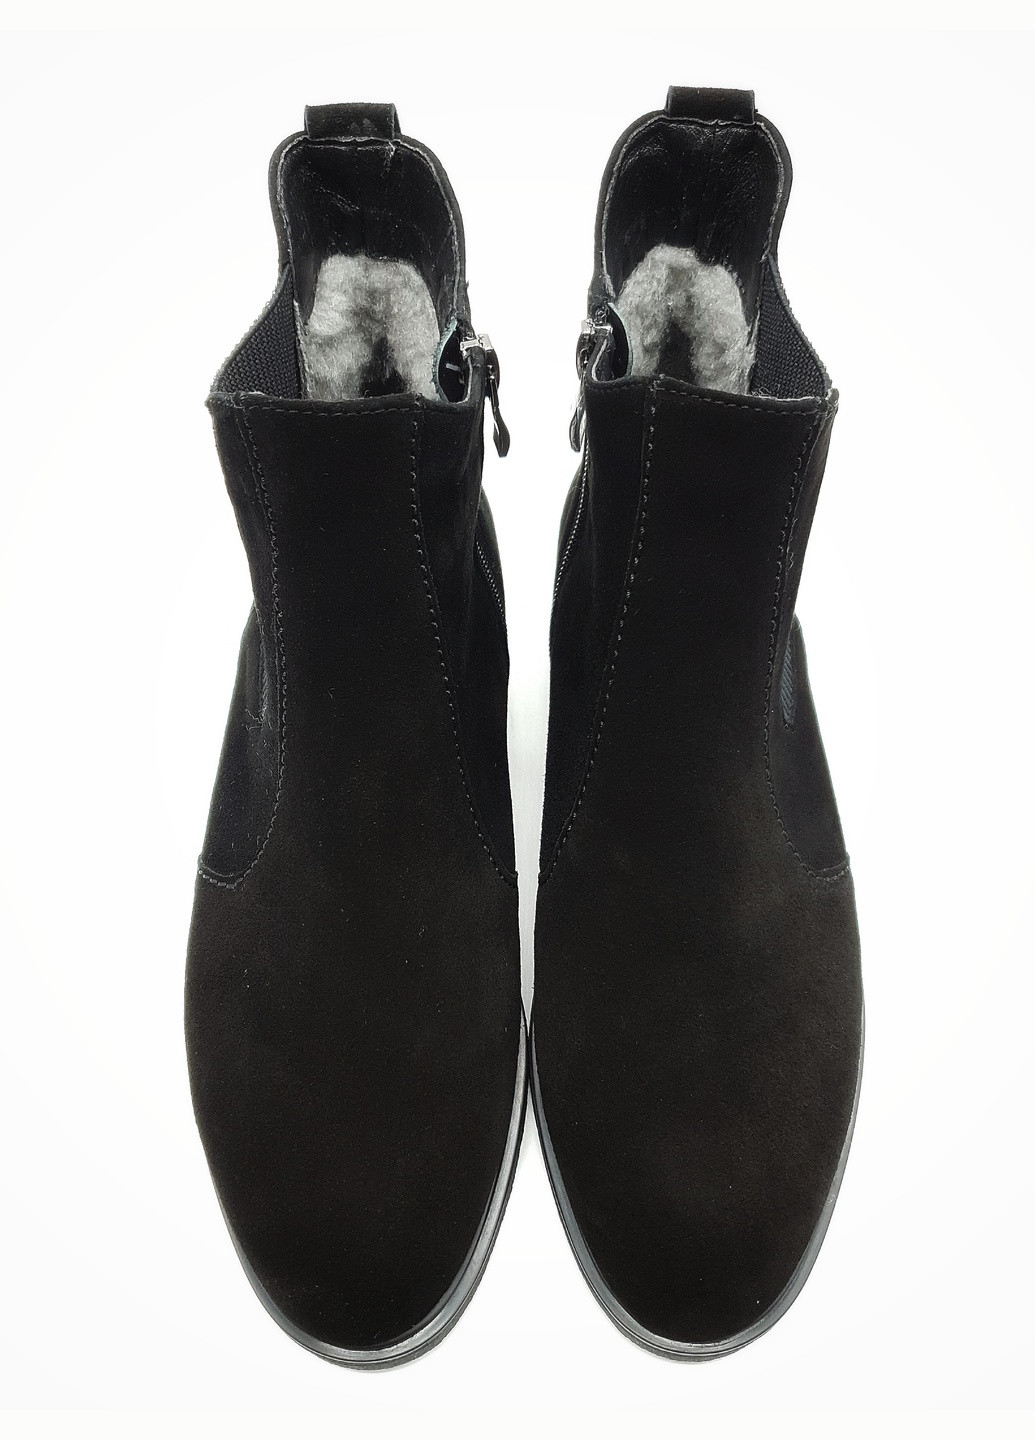 Осенние женские ботинки зимние черные замшевые p-11-4 25,5 см (р) patterns